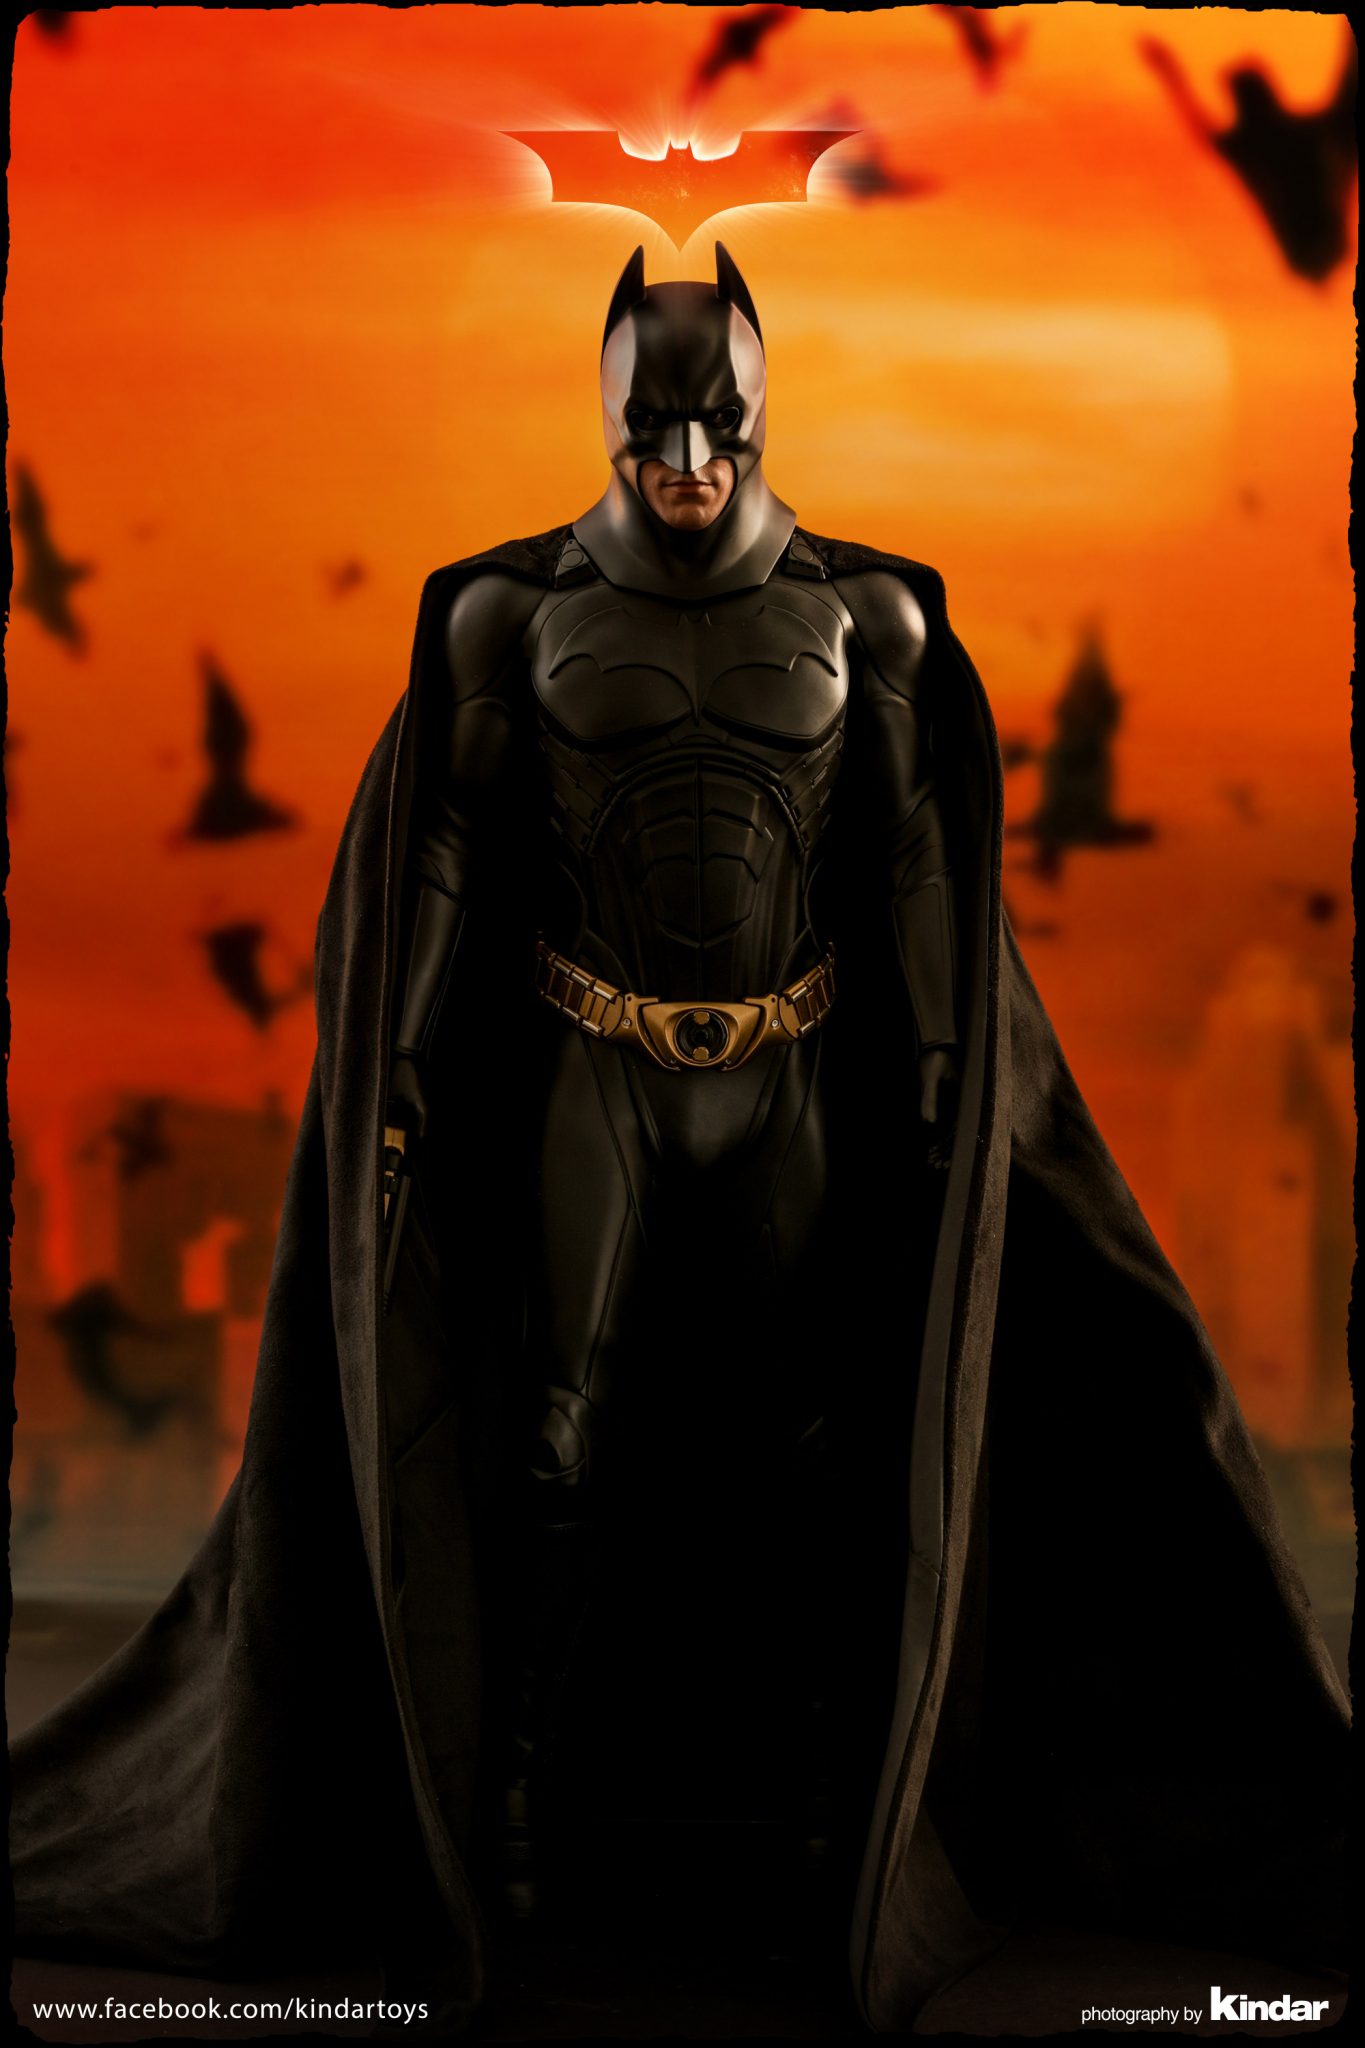 壁纸 : 蝙蝠侠, 艺术品, DC漫画 3840x2160 - angelomeneghini - 2013635 - 电脑桌面壁纸 ...